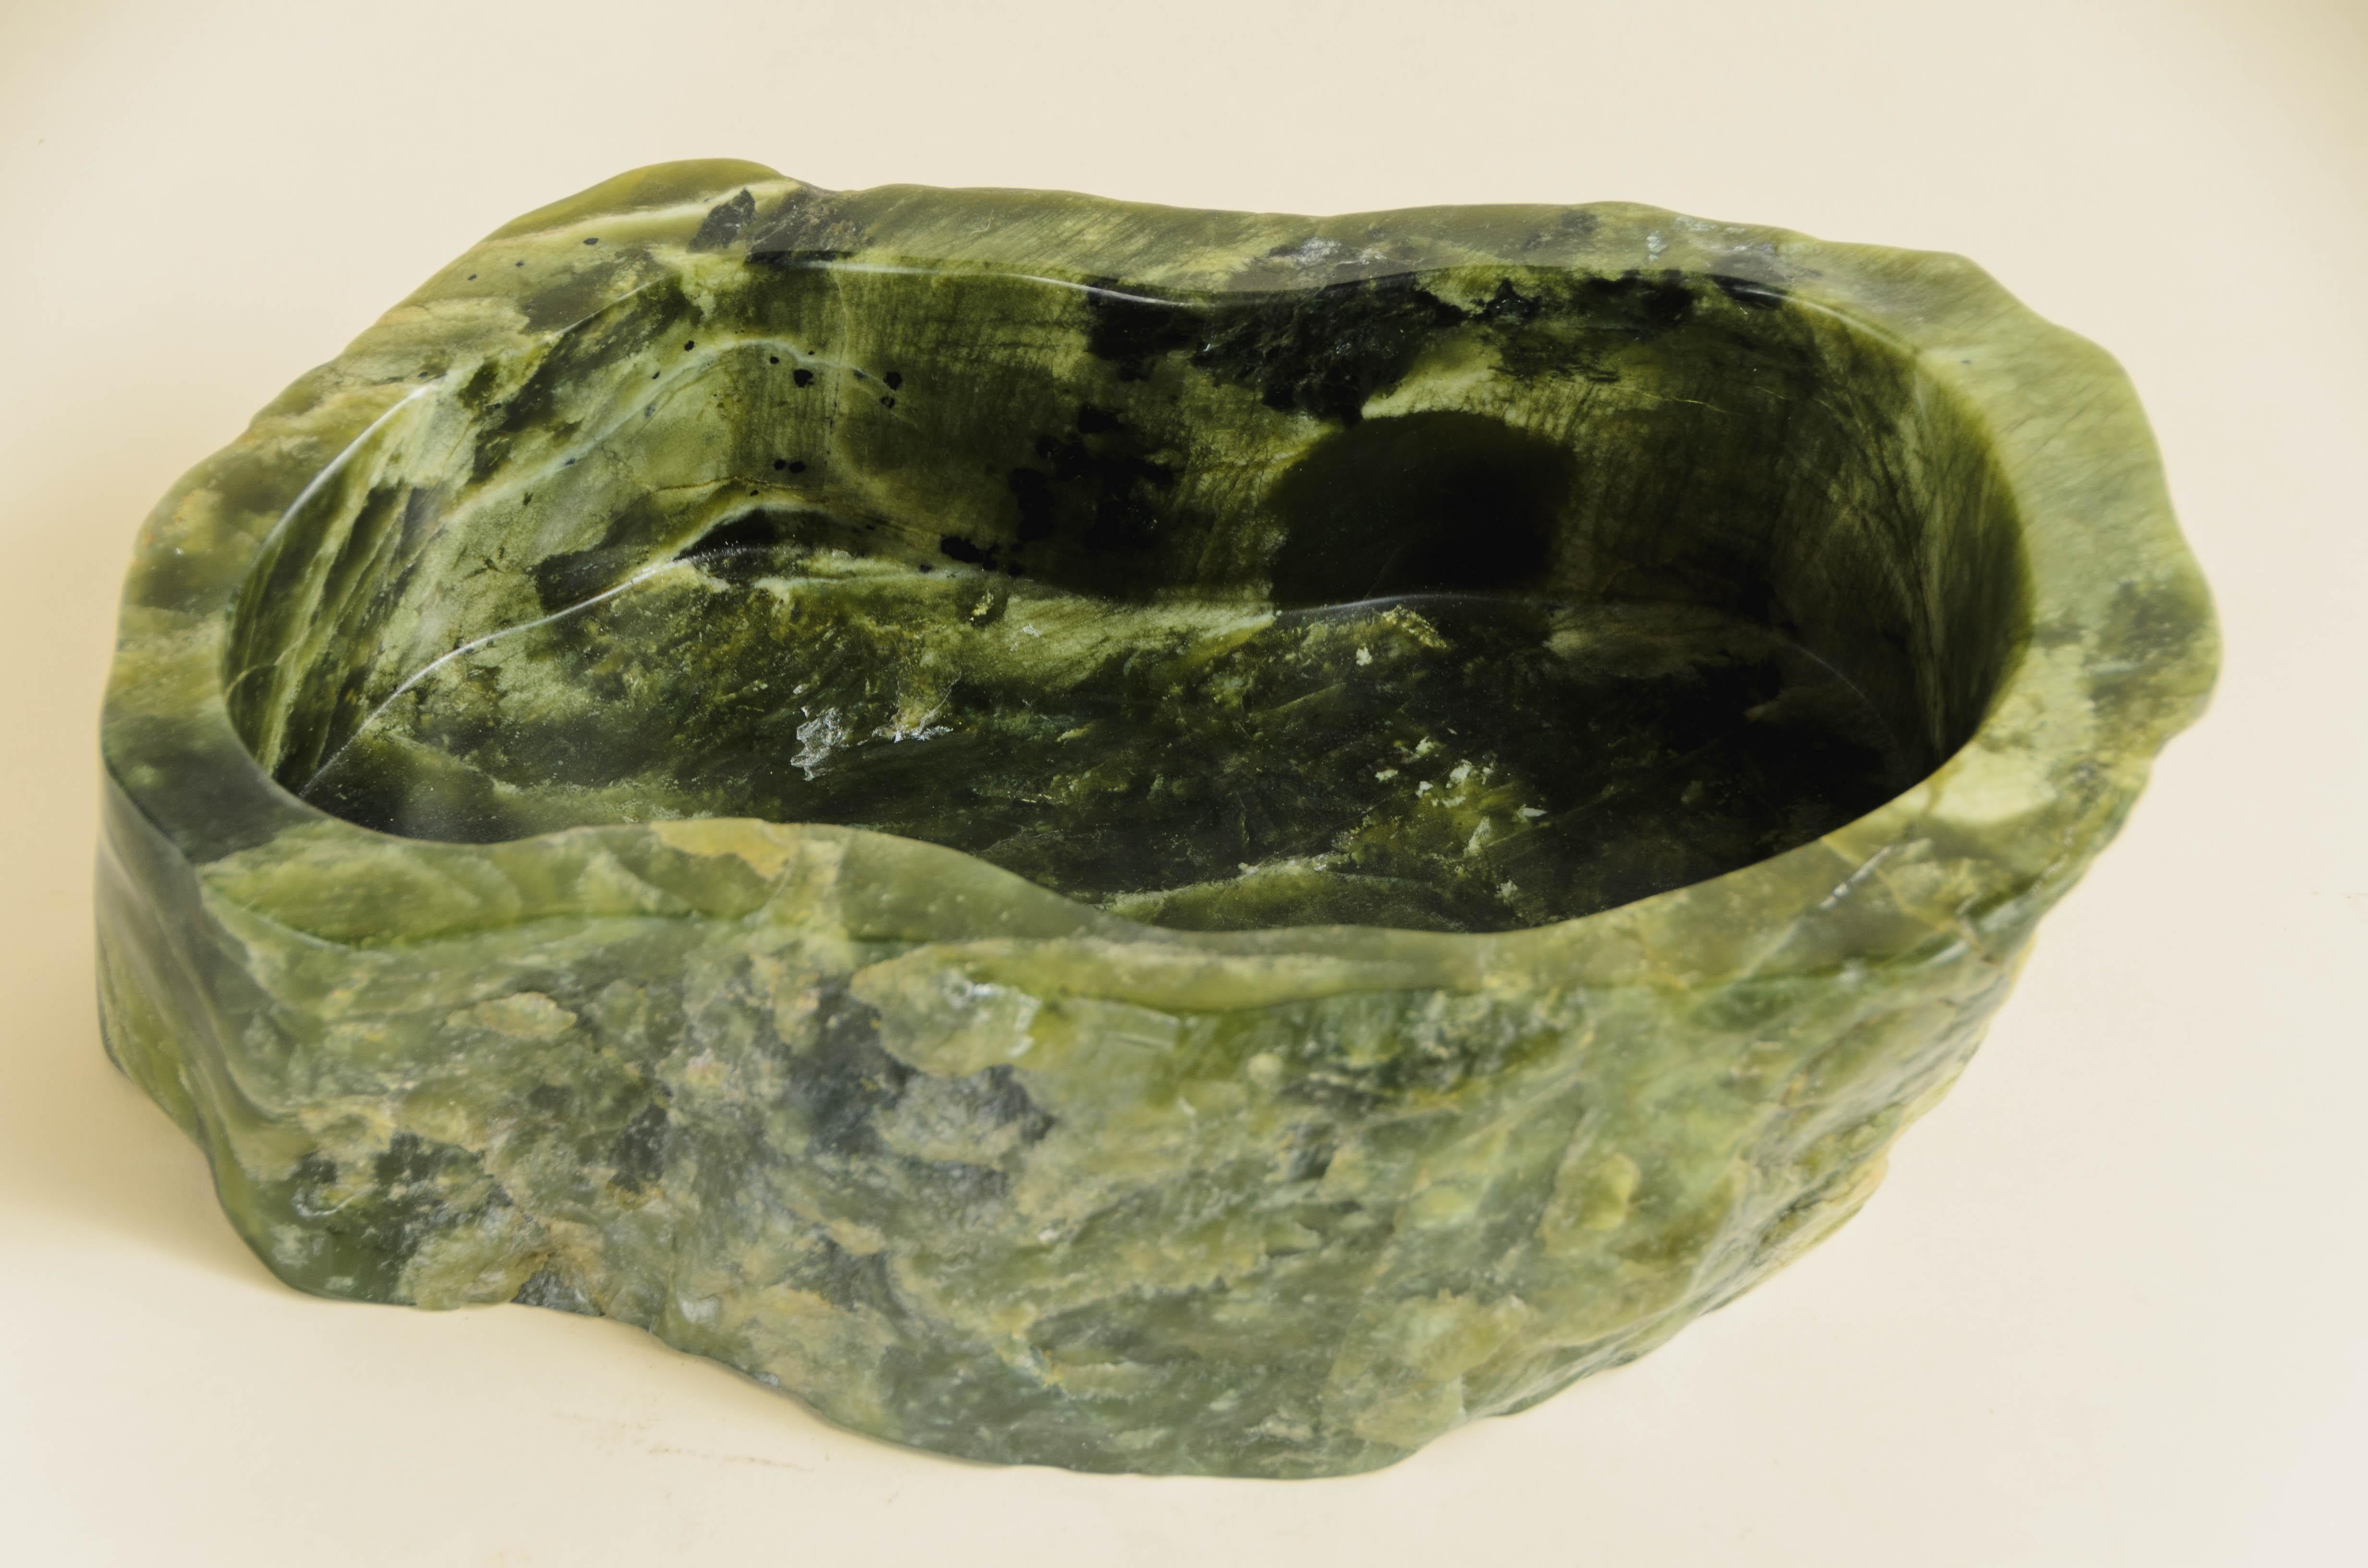 Langer Übertopf
Nephrit Jade
Handgeschnitzt
Limitierte Auflage
Zeitgenössisch

Bitte beachten Sie: Jede einzelne Jade variiert in Form und Farbe.

Nephrit-Jade ist als „Stein des Himmels“ bekannt und wird sowohl wegen seiner ästhetischen